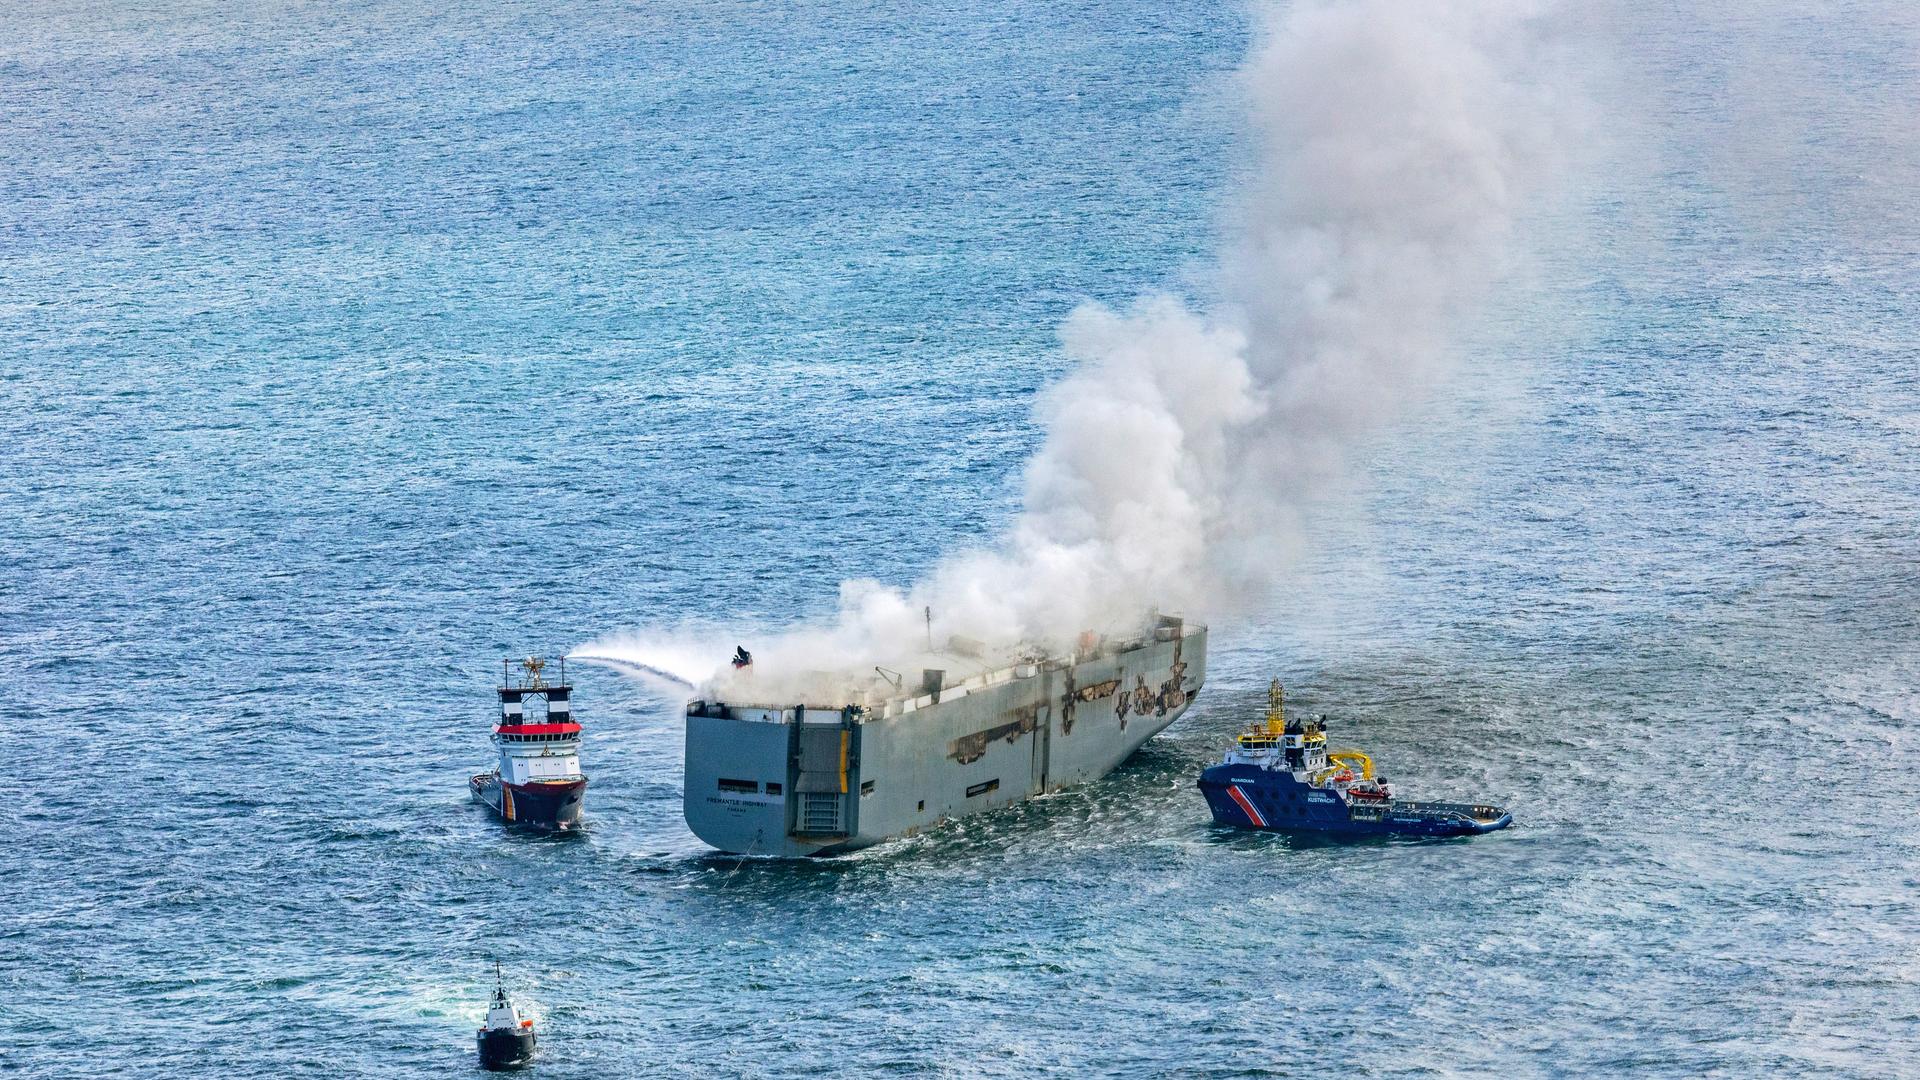 Eine Luftaufnahme zeigt den deutschen Notschlepper "Nordic" (l), der das Feuer auf einem brennenden Frachter in der Nordsee bekämpft. Rechts ist das Boot "Guardian" der niederländischen Küstenwacht zu sehen.